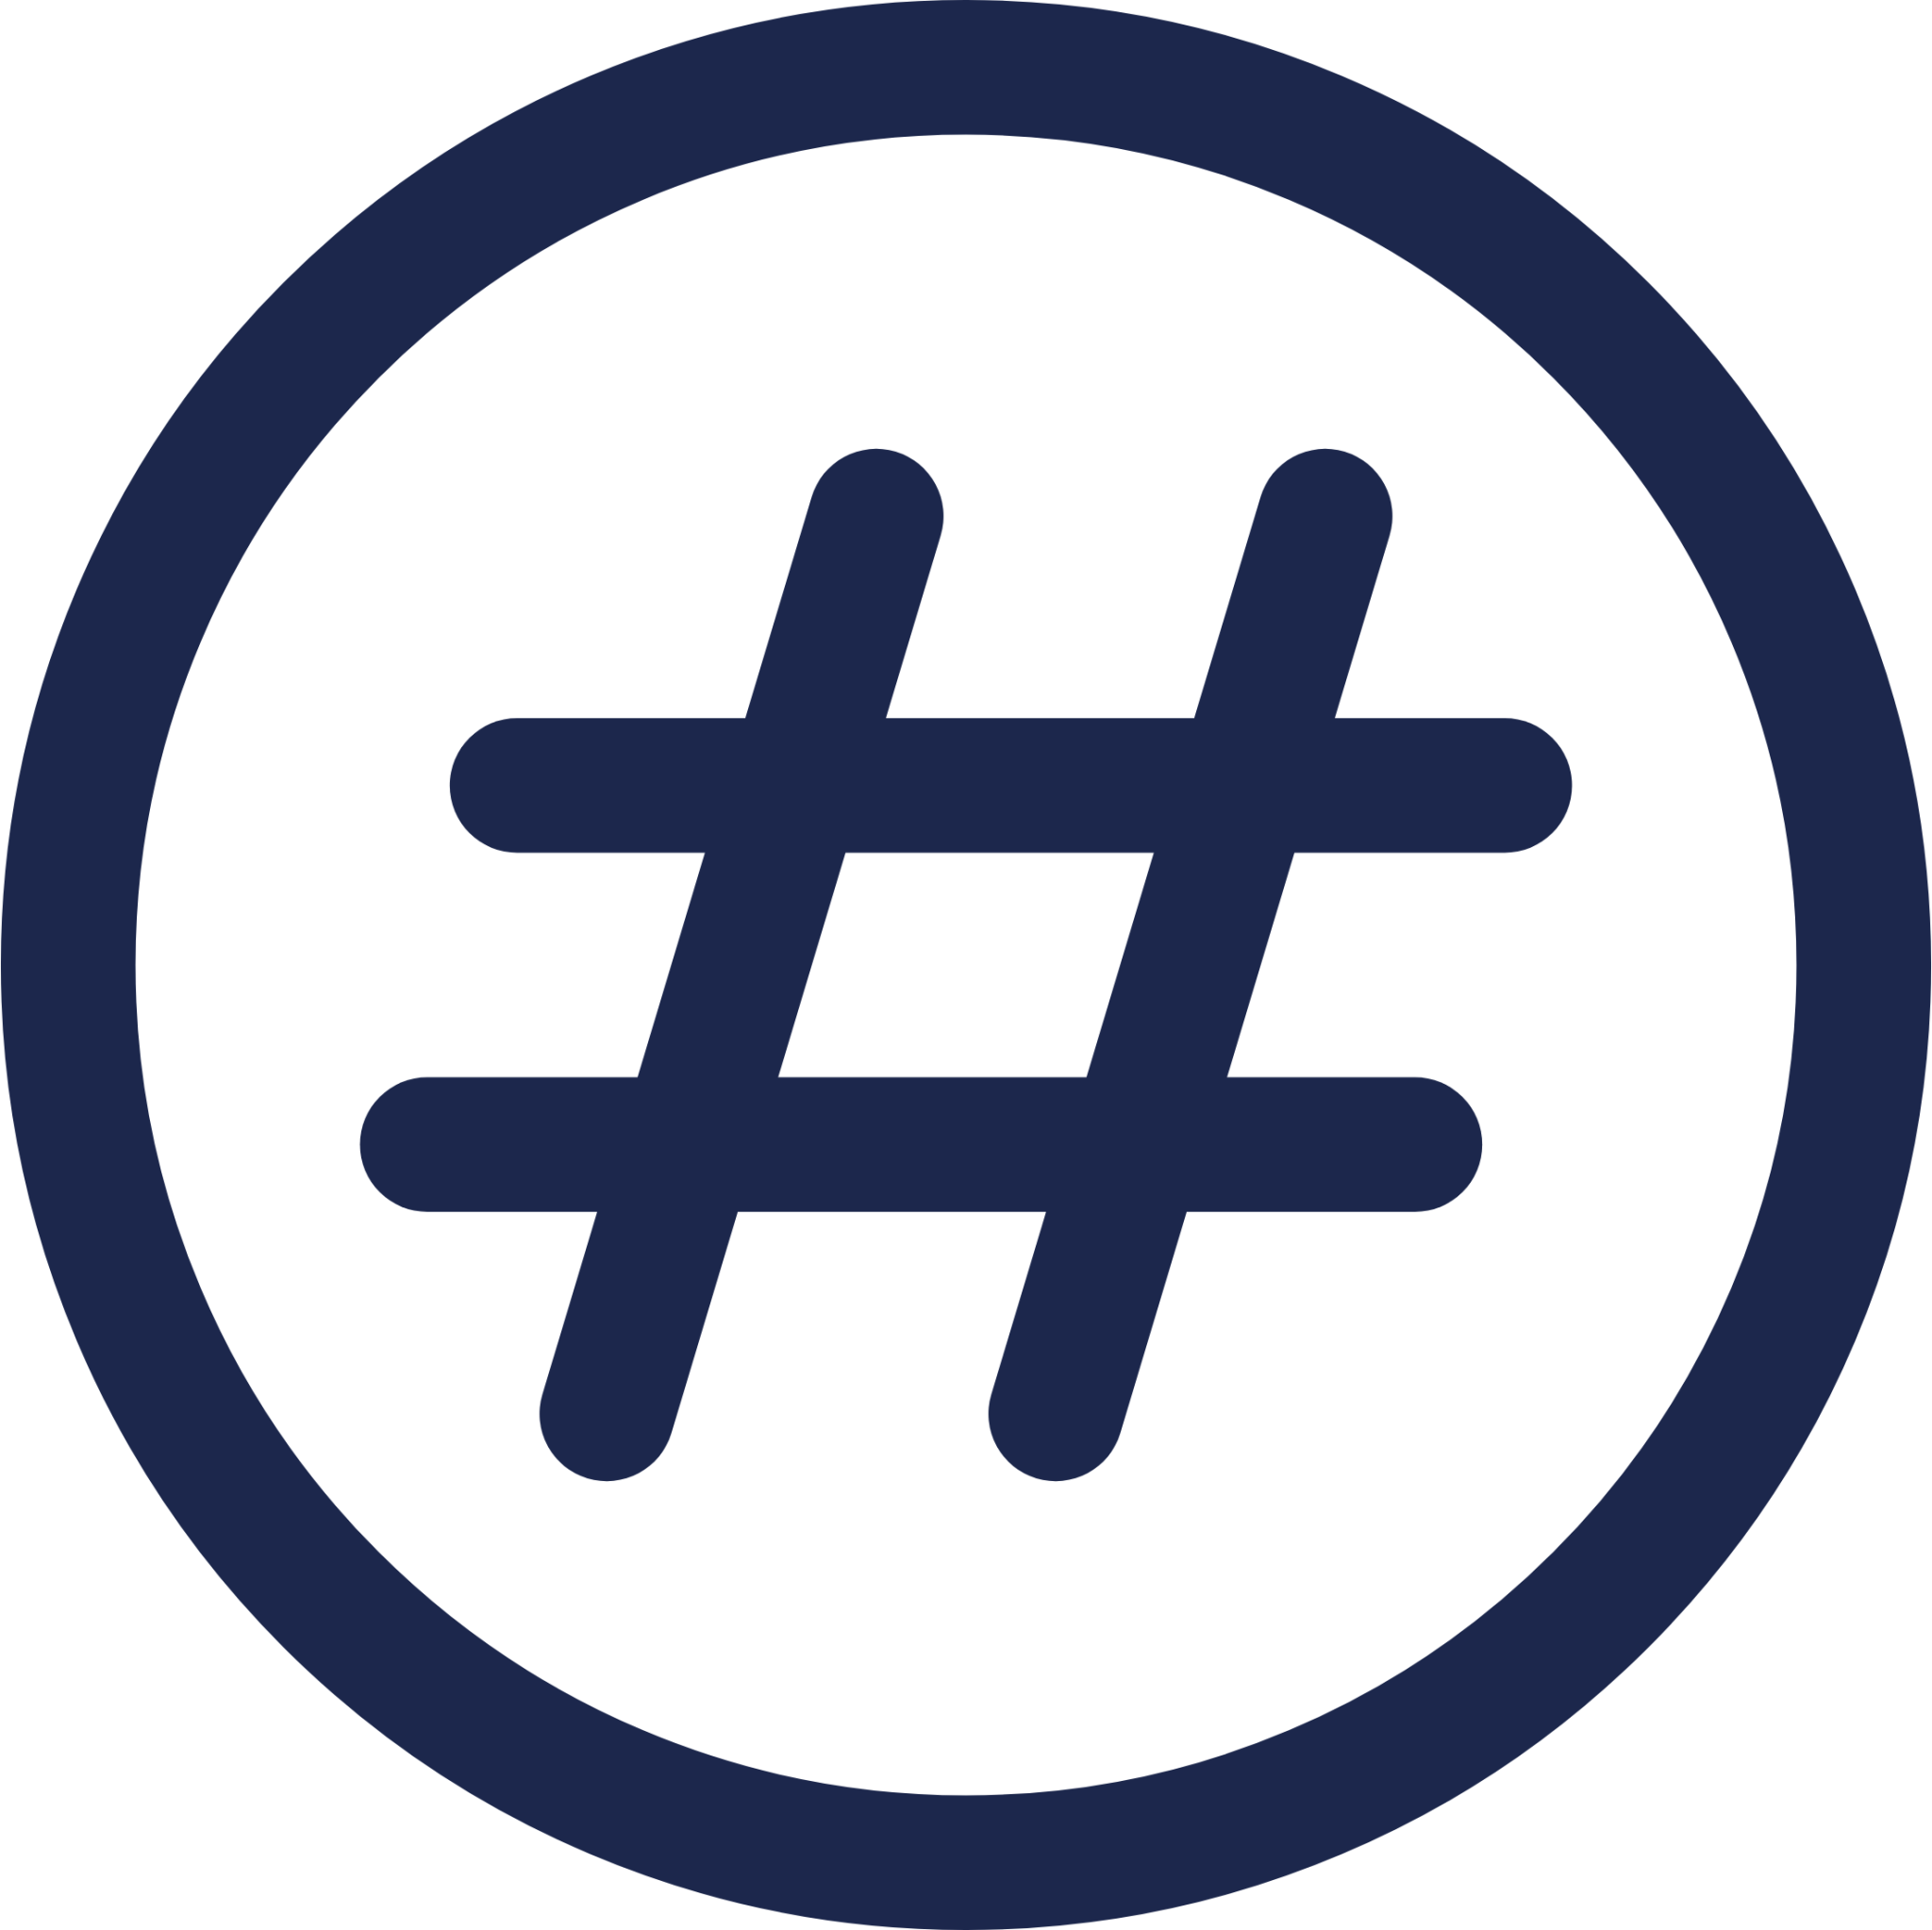 Hashtag Circle icon